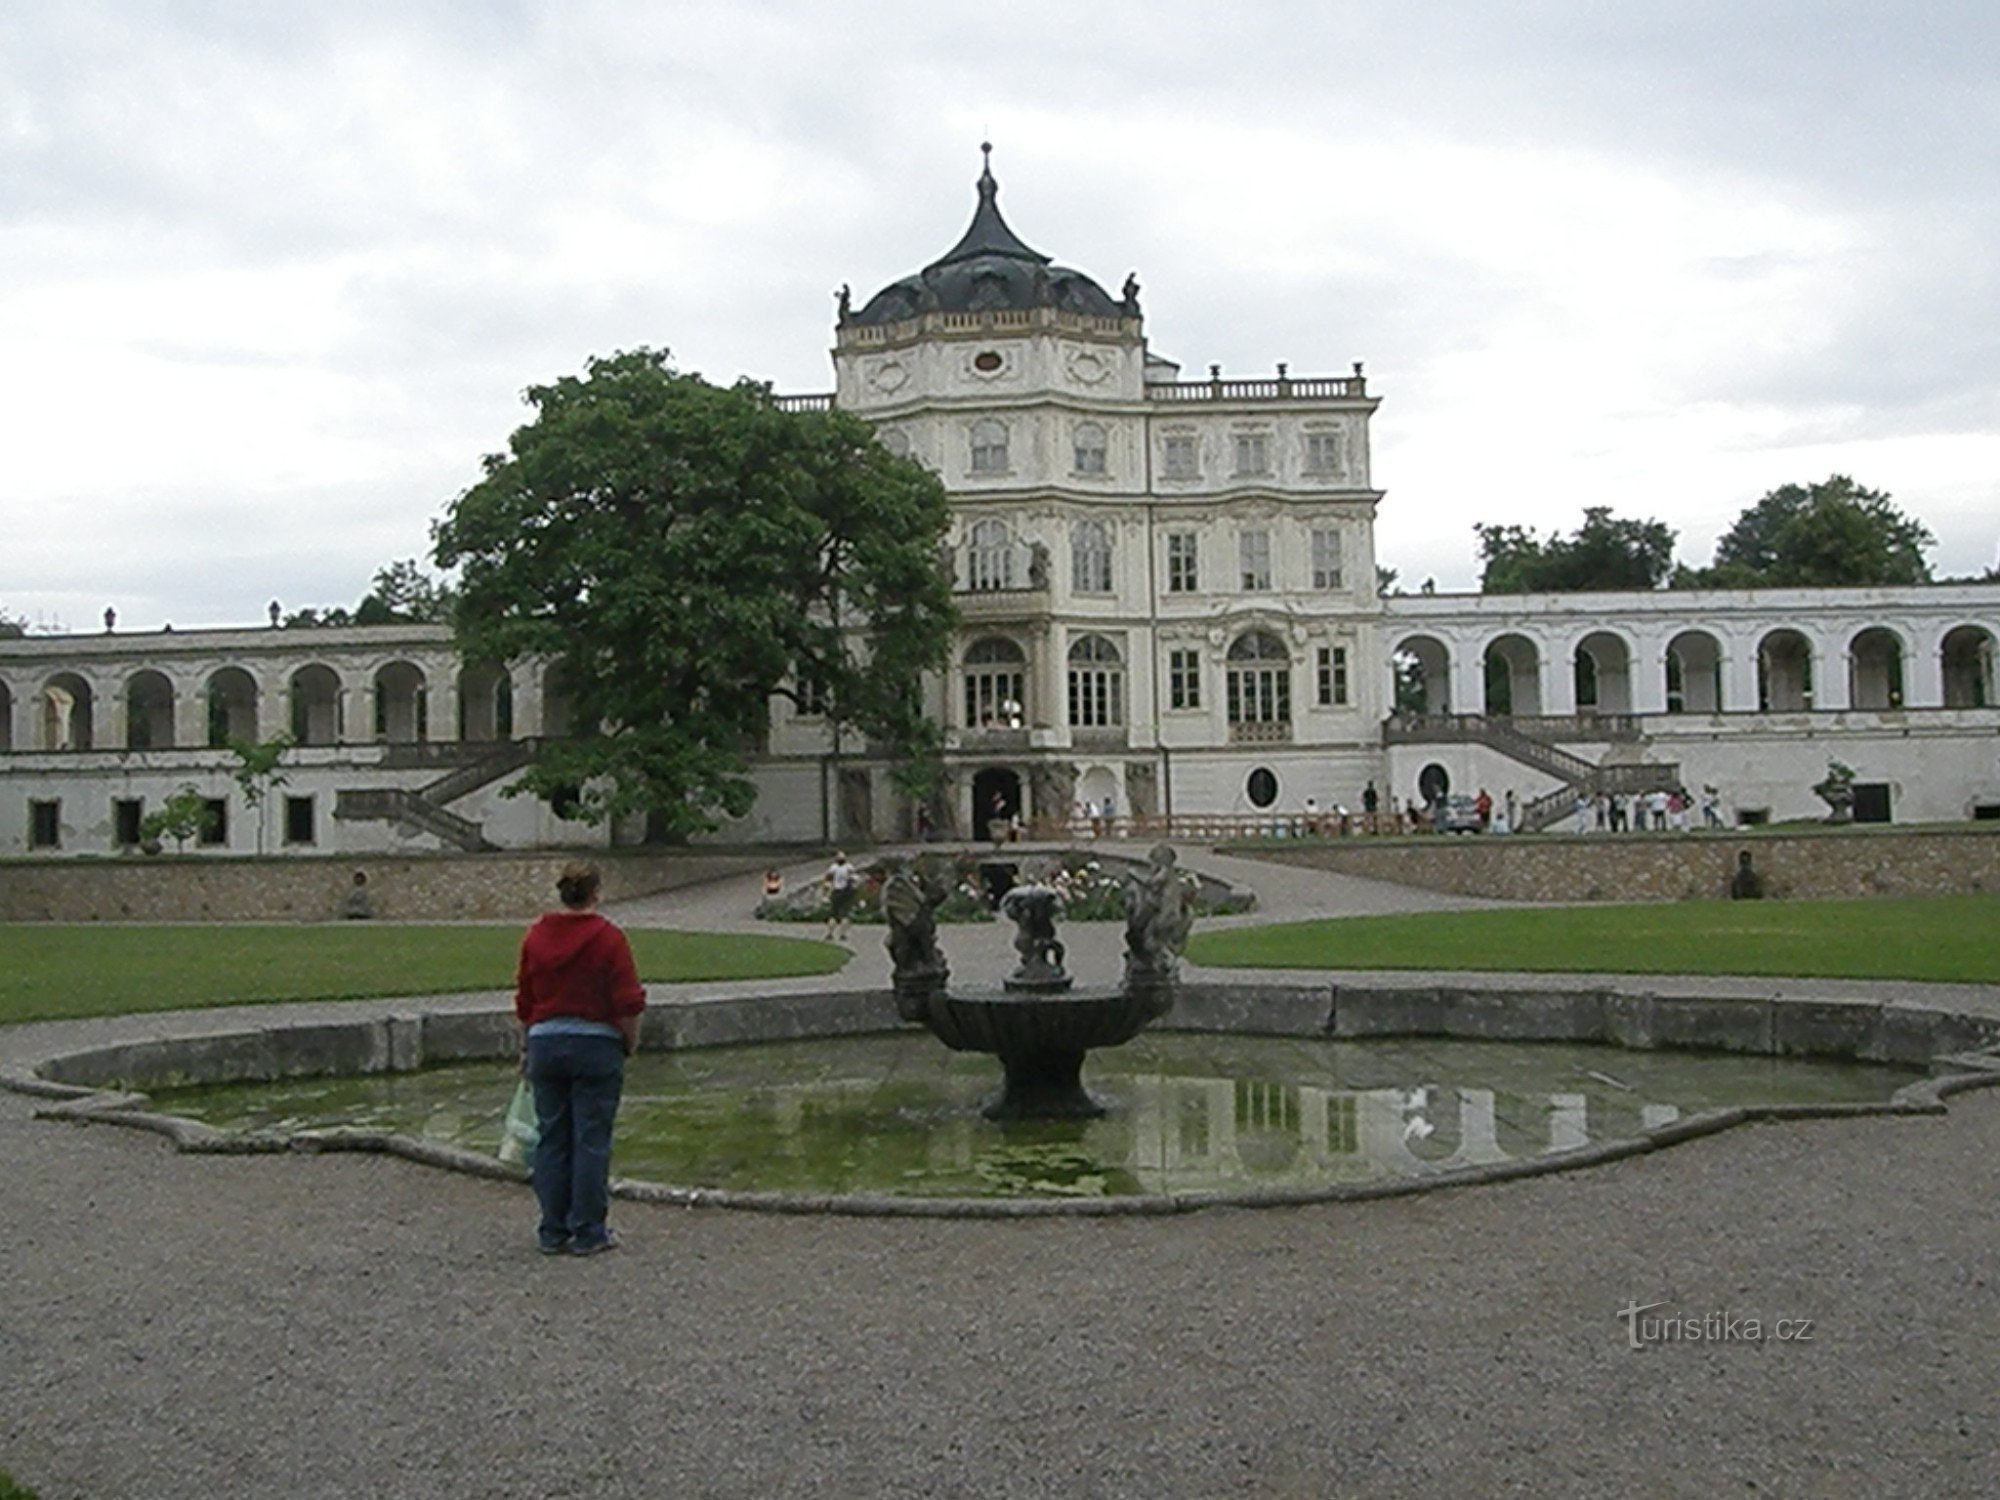 Tamkajšnji baročni grad z bazeni in ribnikom morda malce spominja na mali Versailles